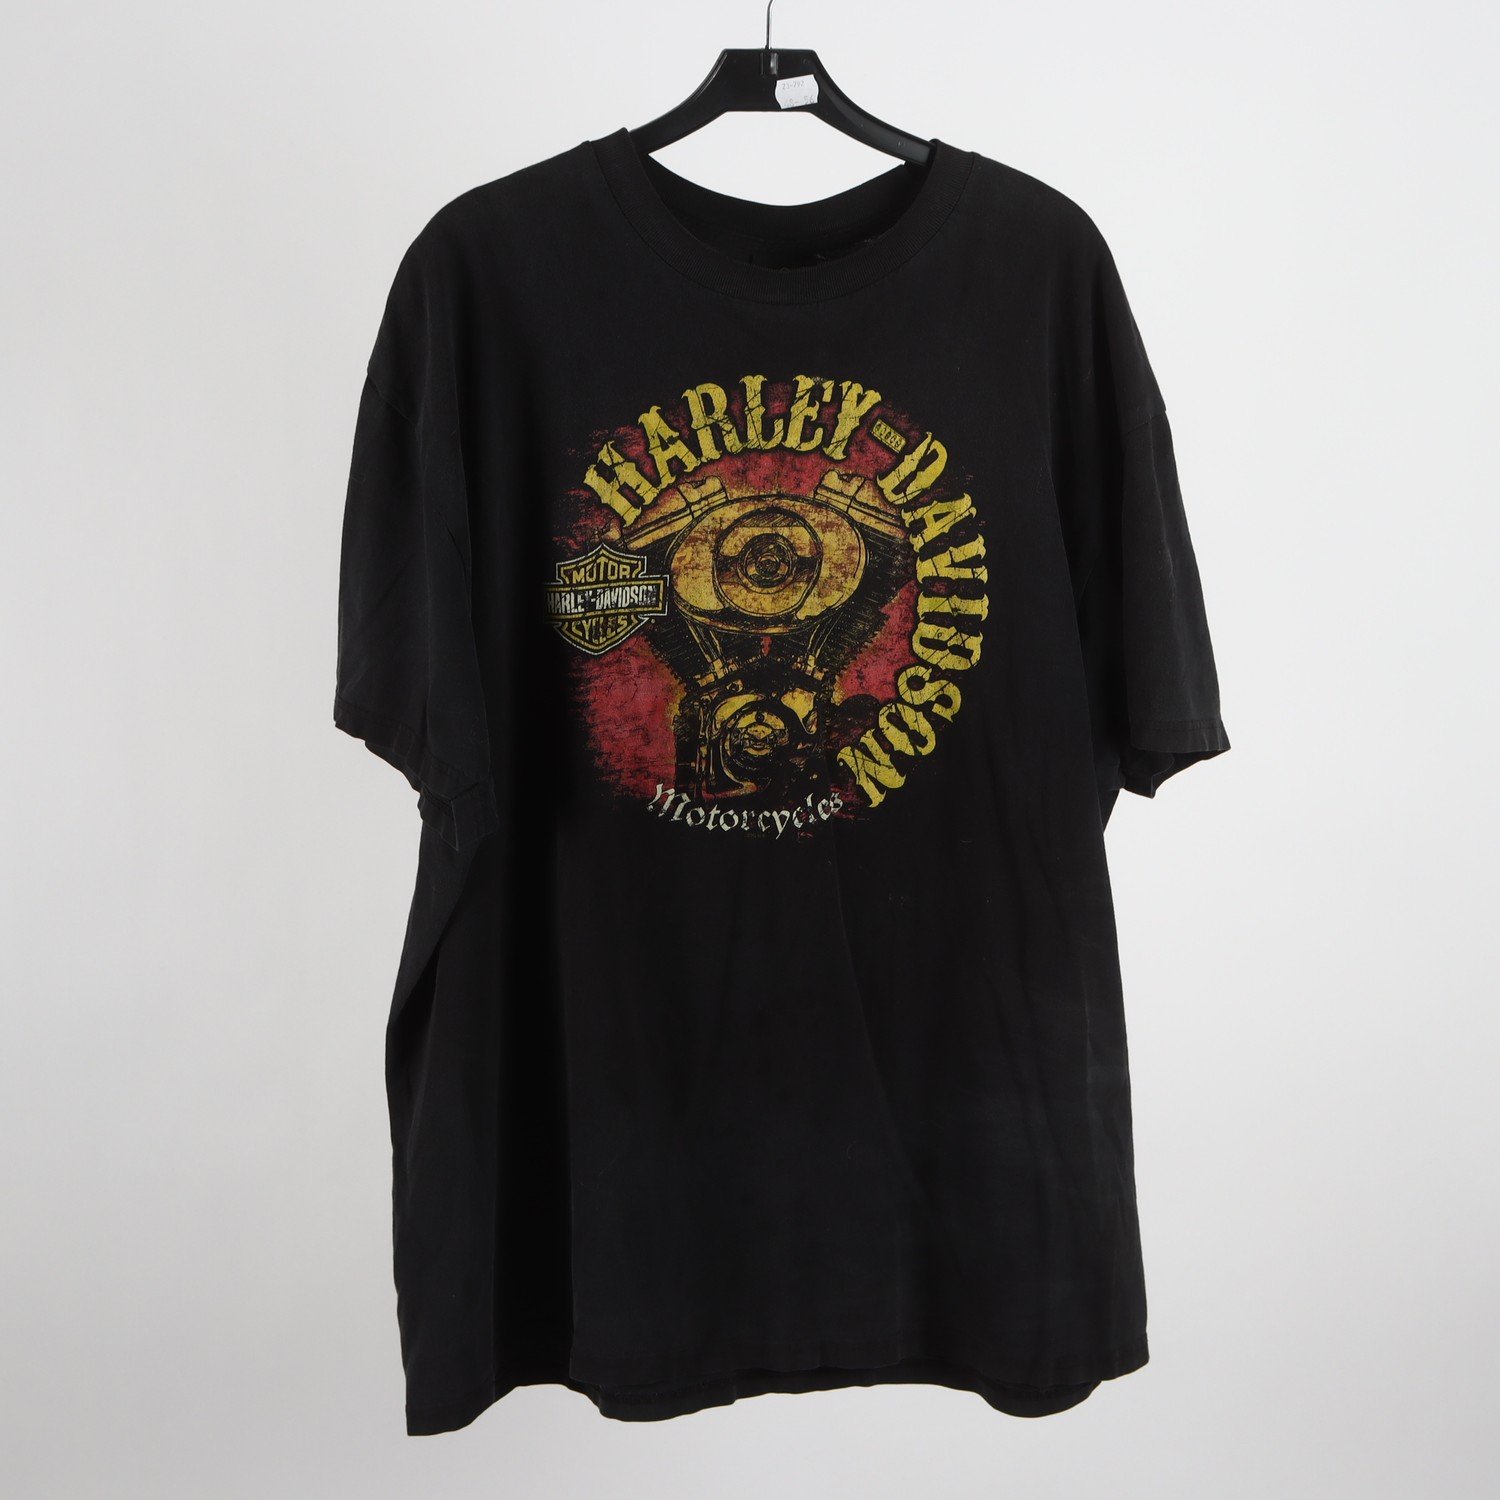 T-shirt, Harley Davidson, vintage, stl. L